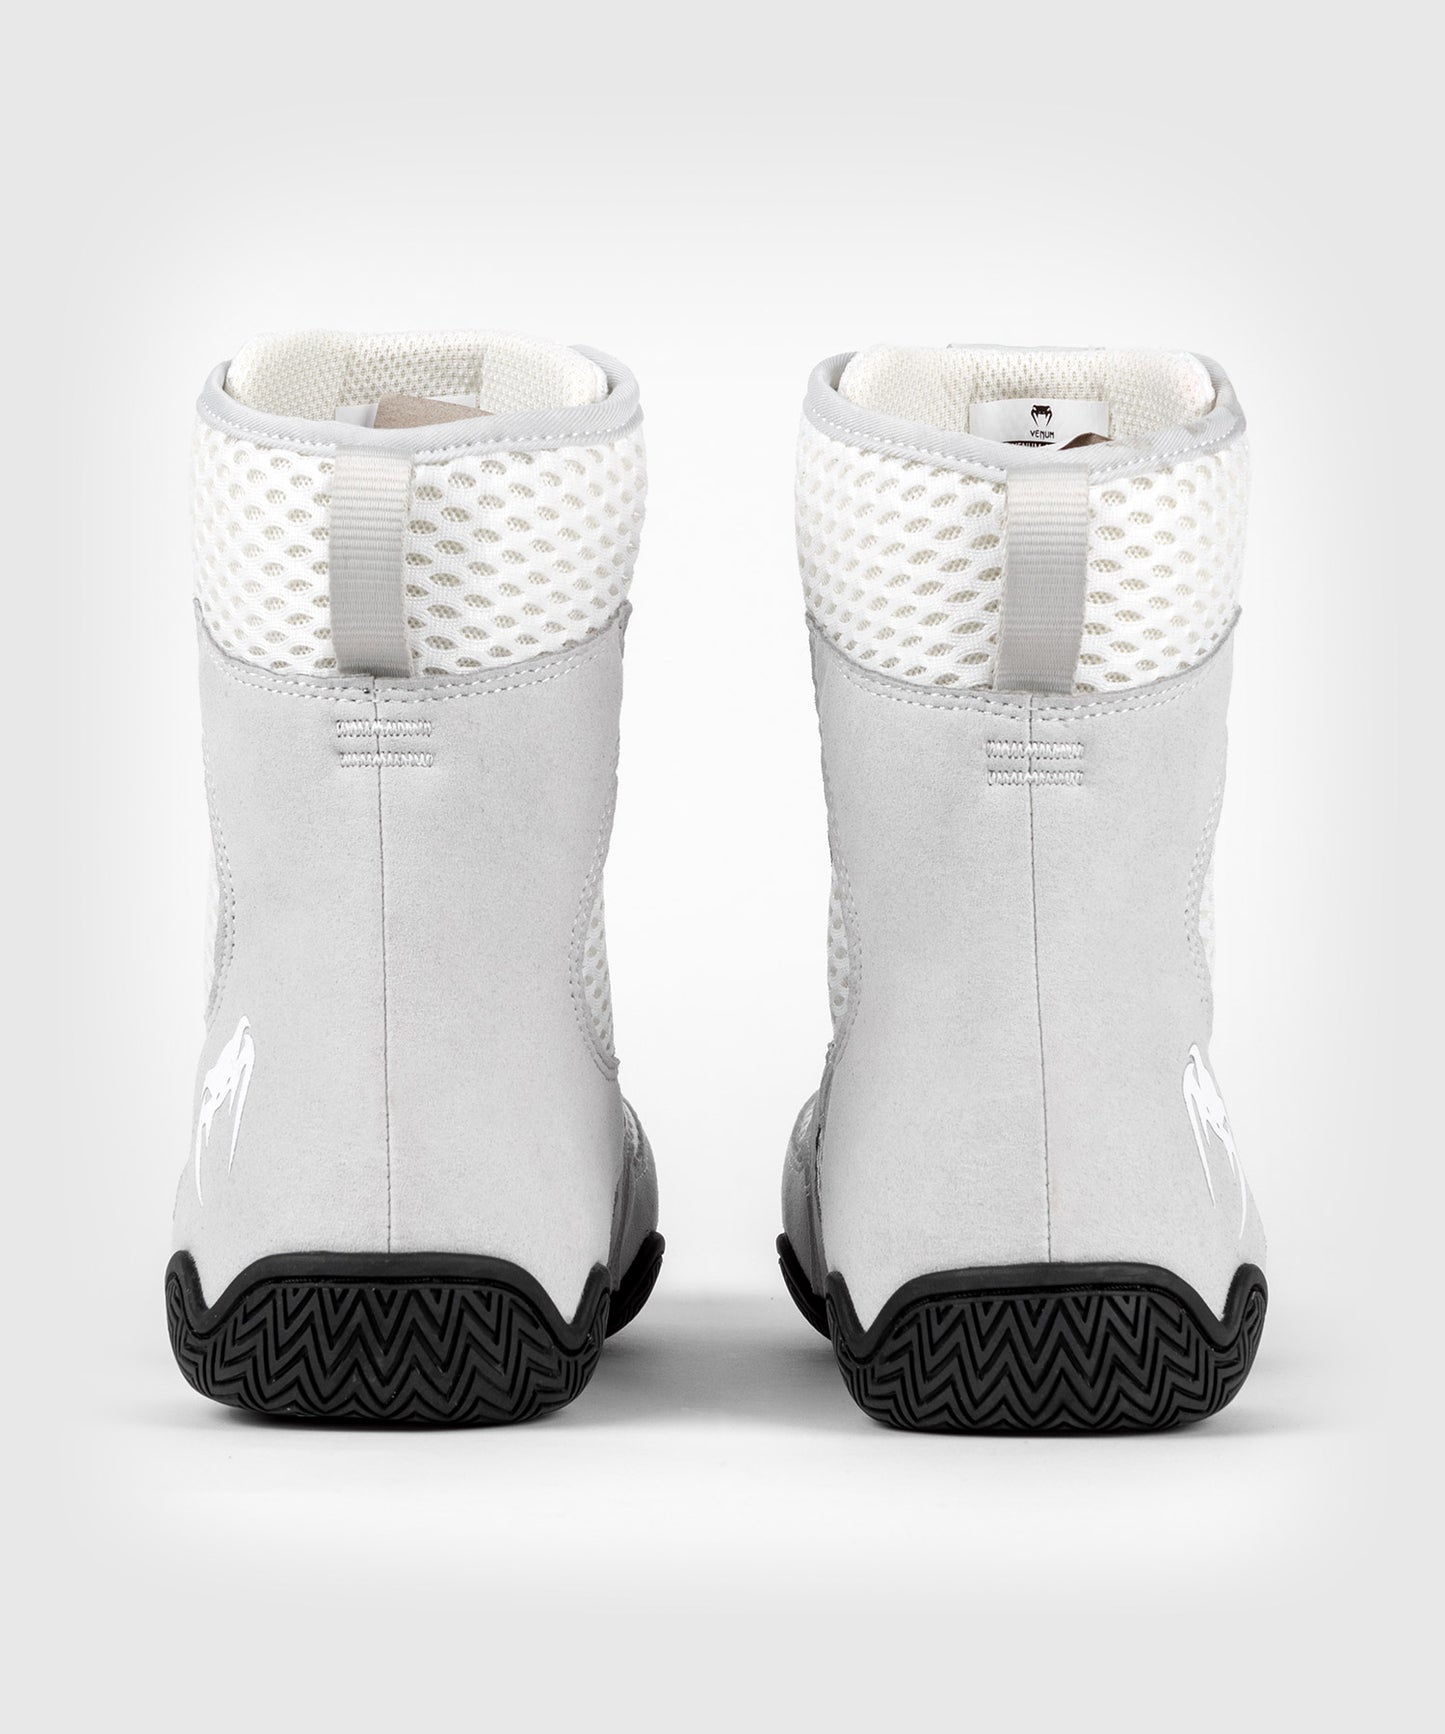 Chaussures de boxe Venum Contender - Blanc/Gris